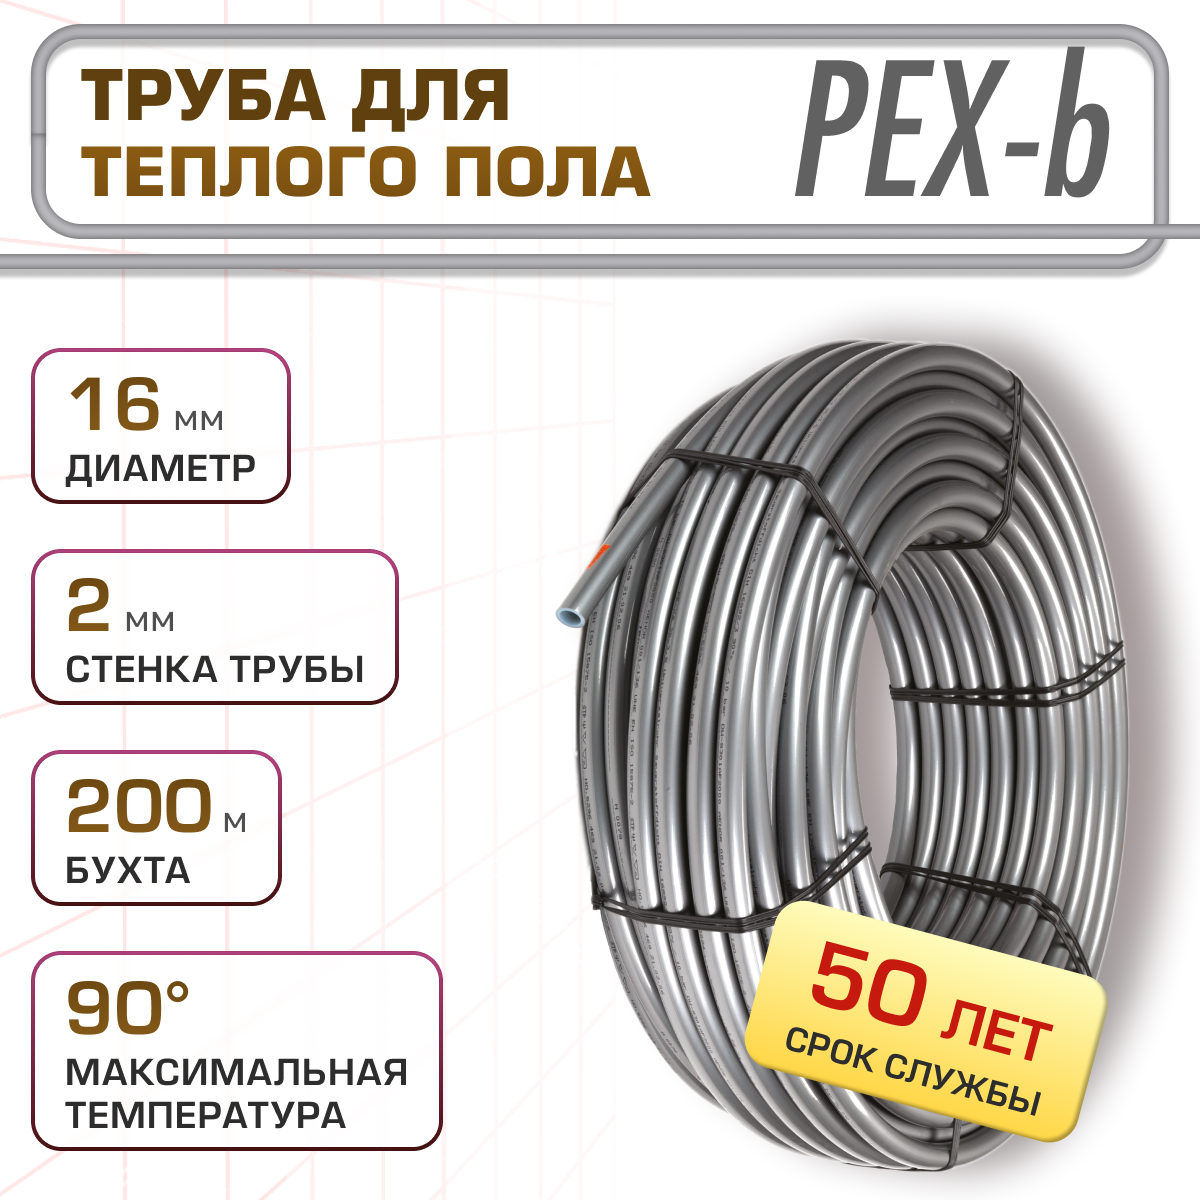 Труба для тёплого пола LerDepo PEX-b, 16х2,0 мм, бухта 200м